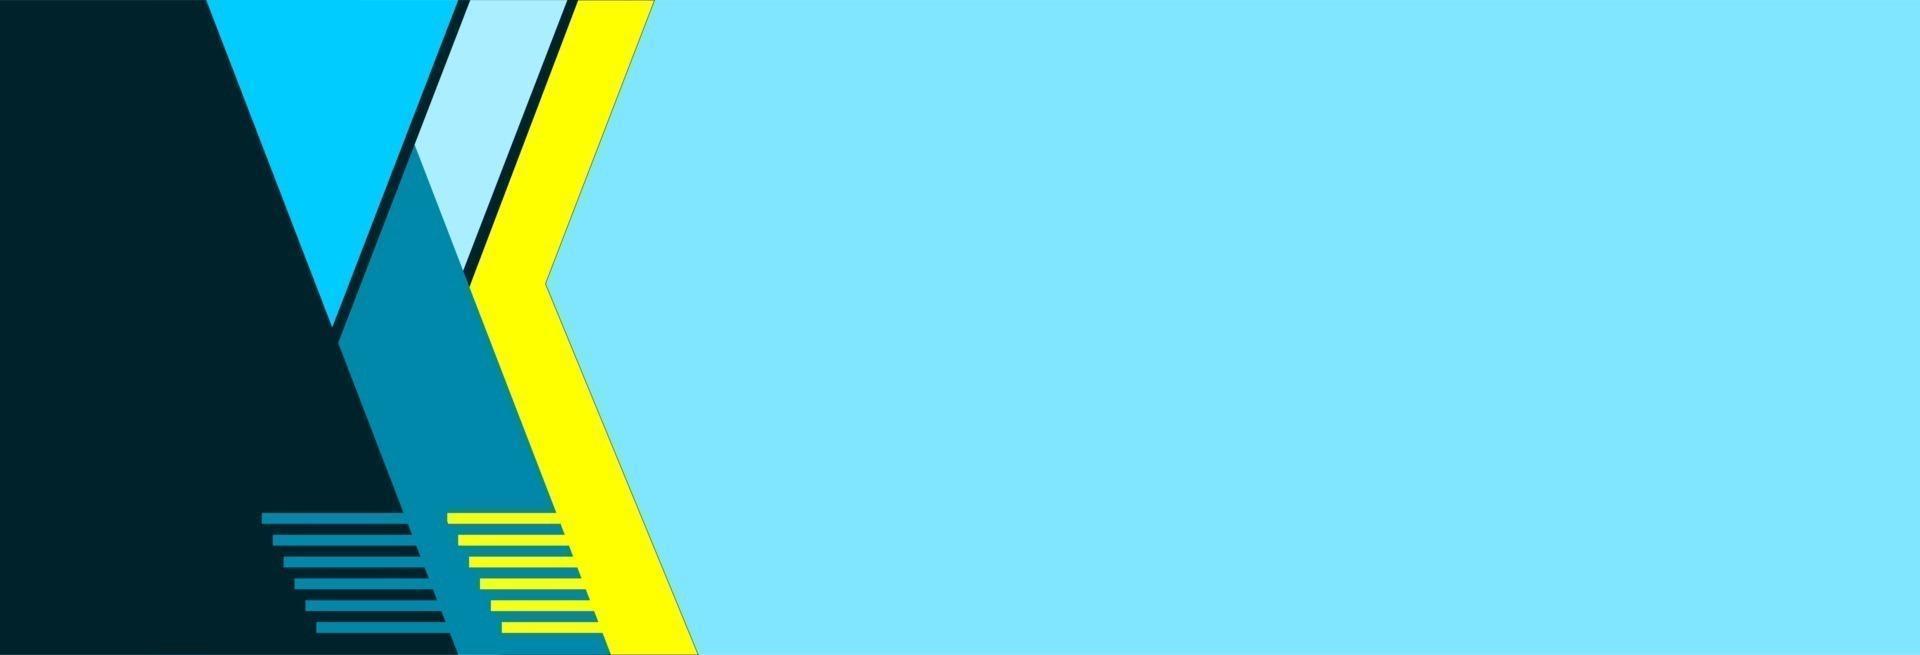 blauwe banner met gele streep vector